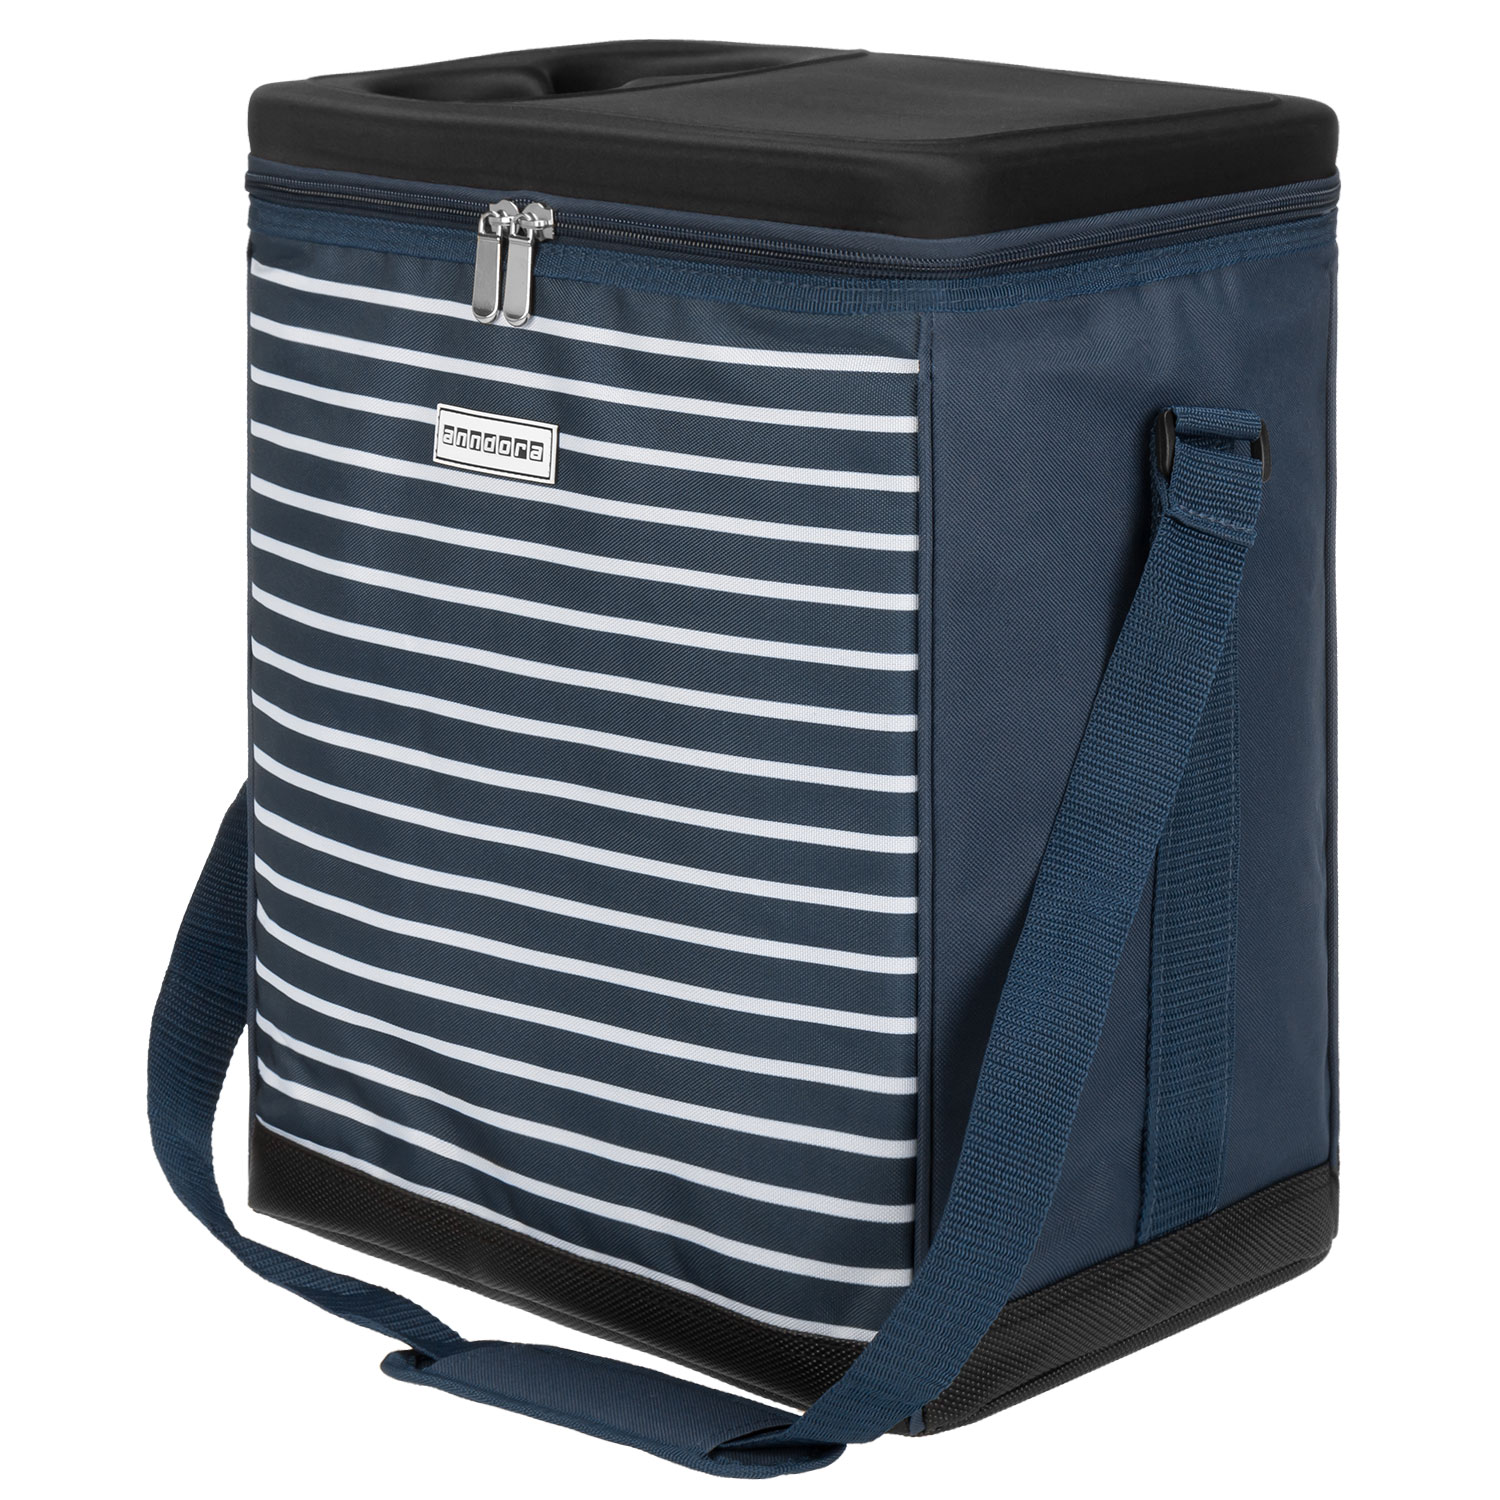 anndora Kühltasche 32 Liter navy blau weiß – Kühleinsatz -reisenthel carrycruiser kompatibel